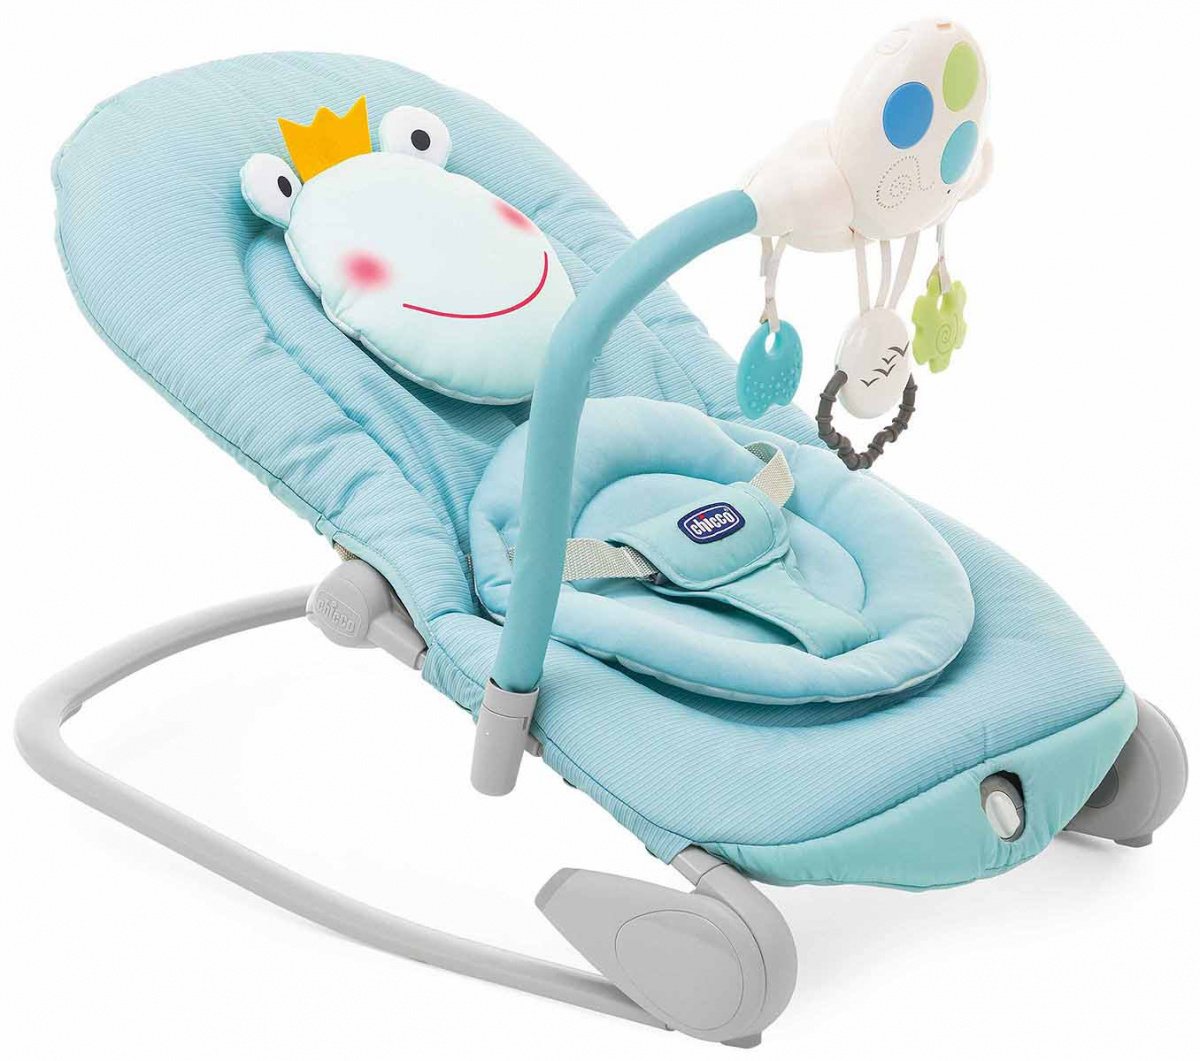 Кресла-качалки для новорожденных